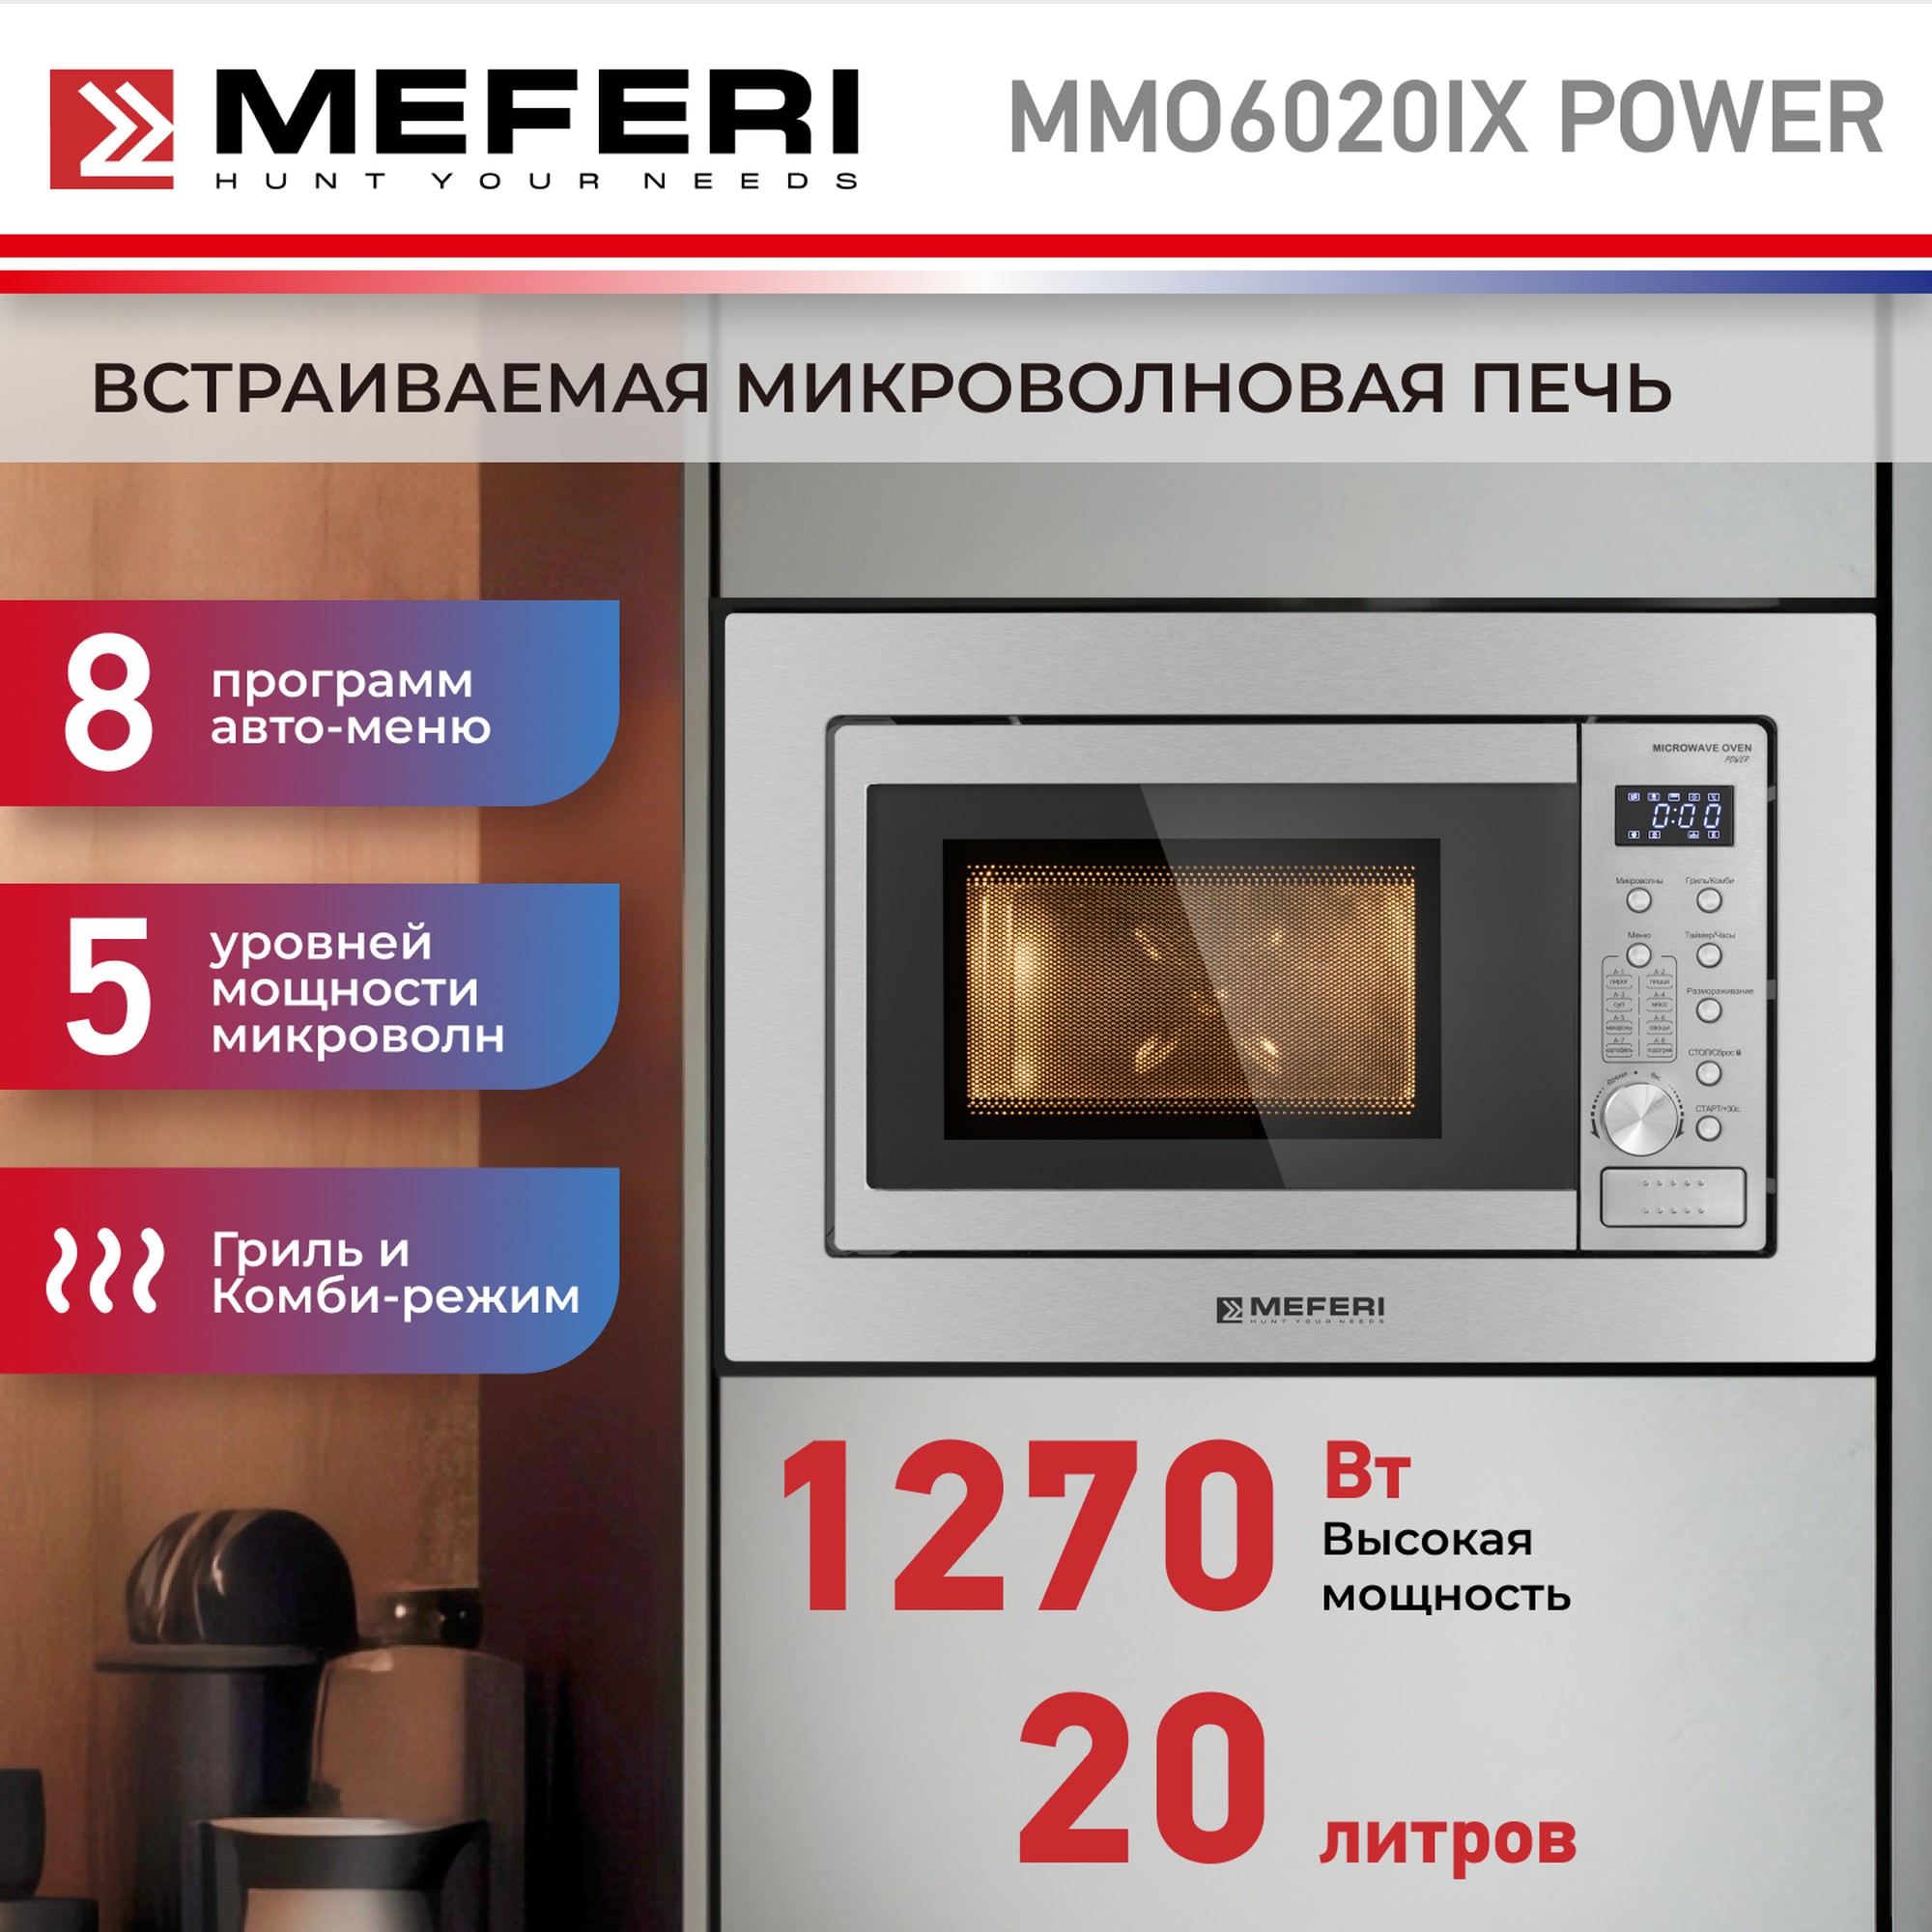 Встраиваемая микроволновая печь MEFERI MMO6020IX POWER встраиваемая варочная панель электрическая meferi meh453bk power